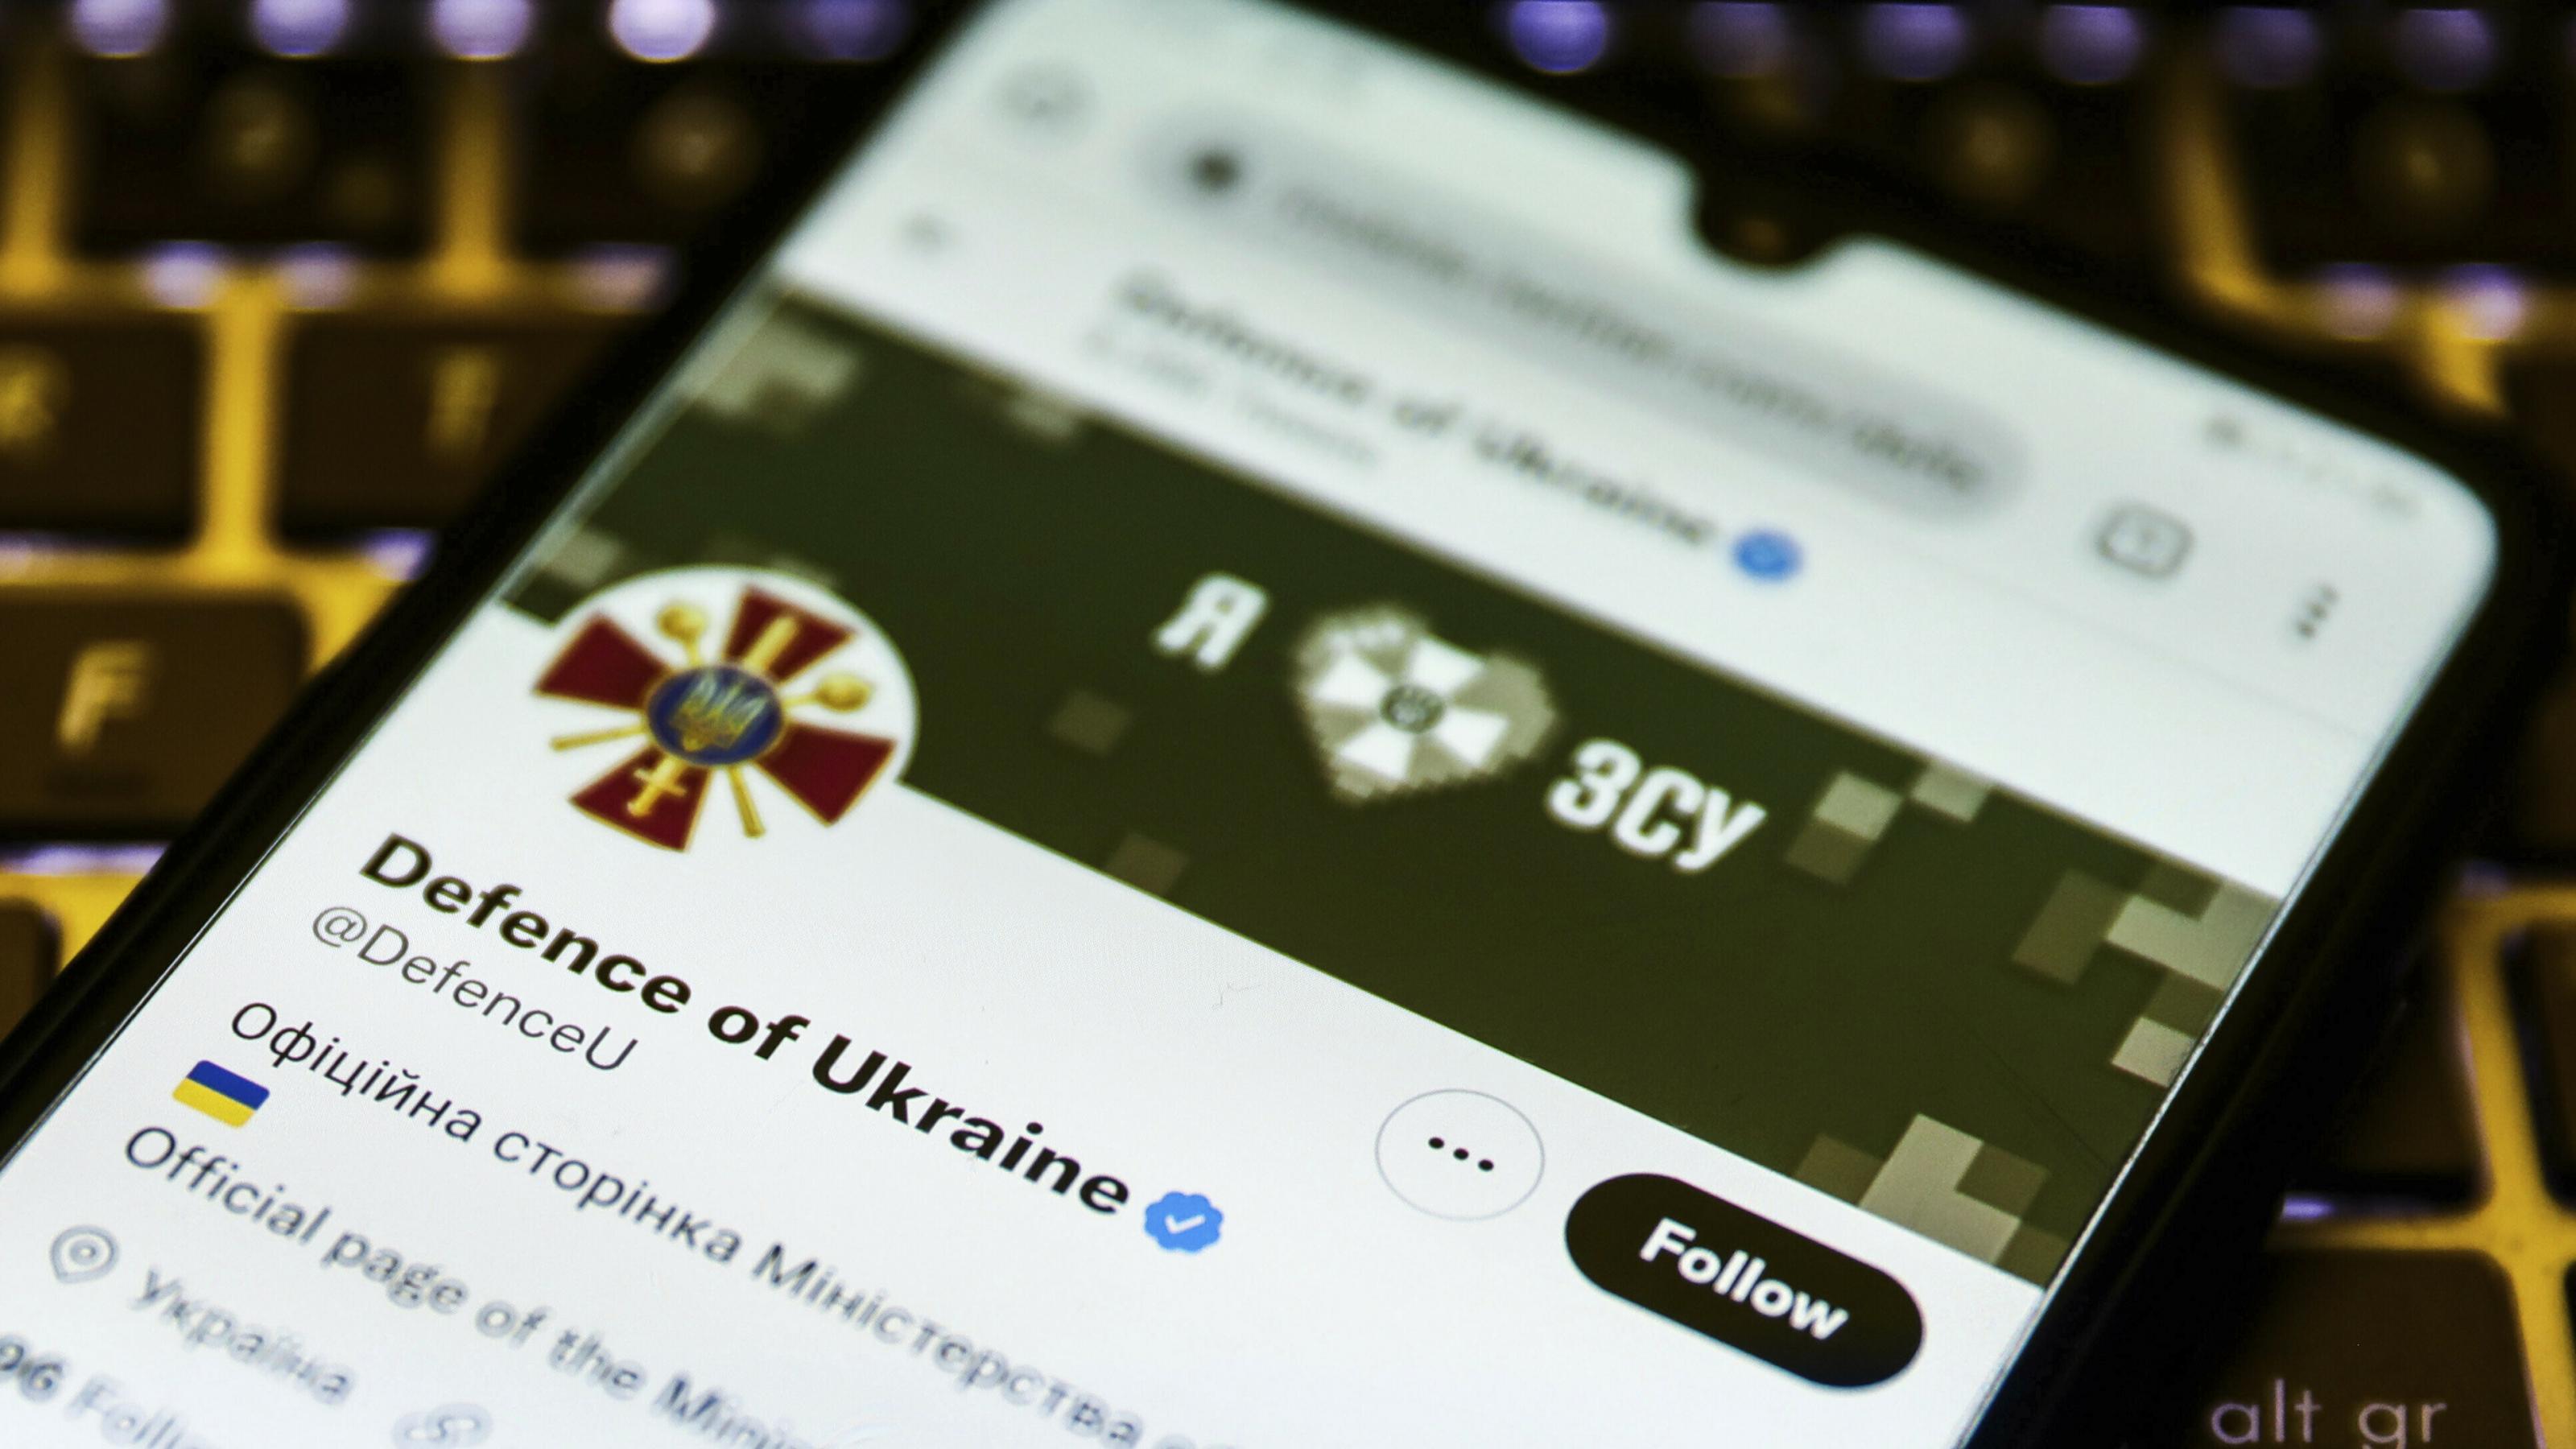 Auf einem Handy ist das Twitter-Profil des ukrainischen Verteidigungsministeriums zu sehen.